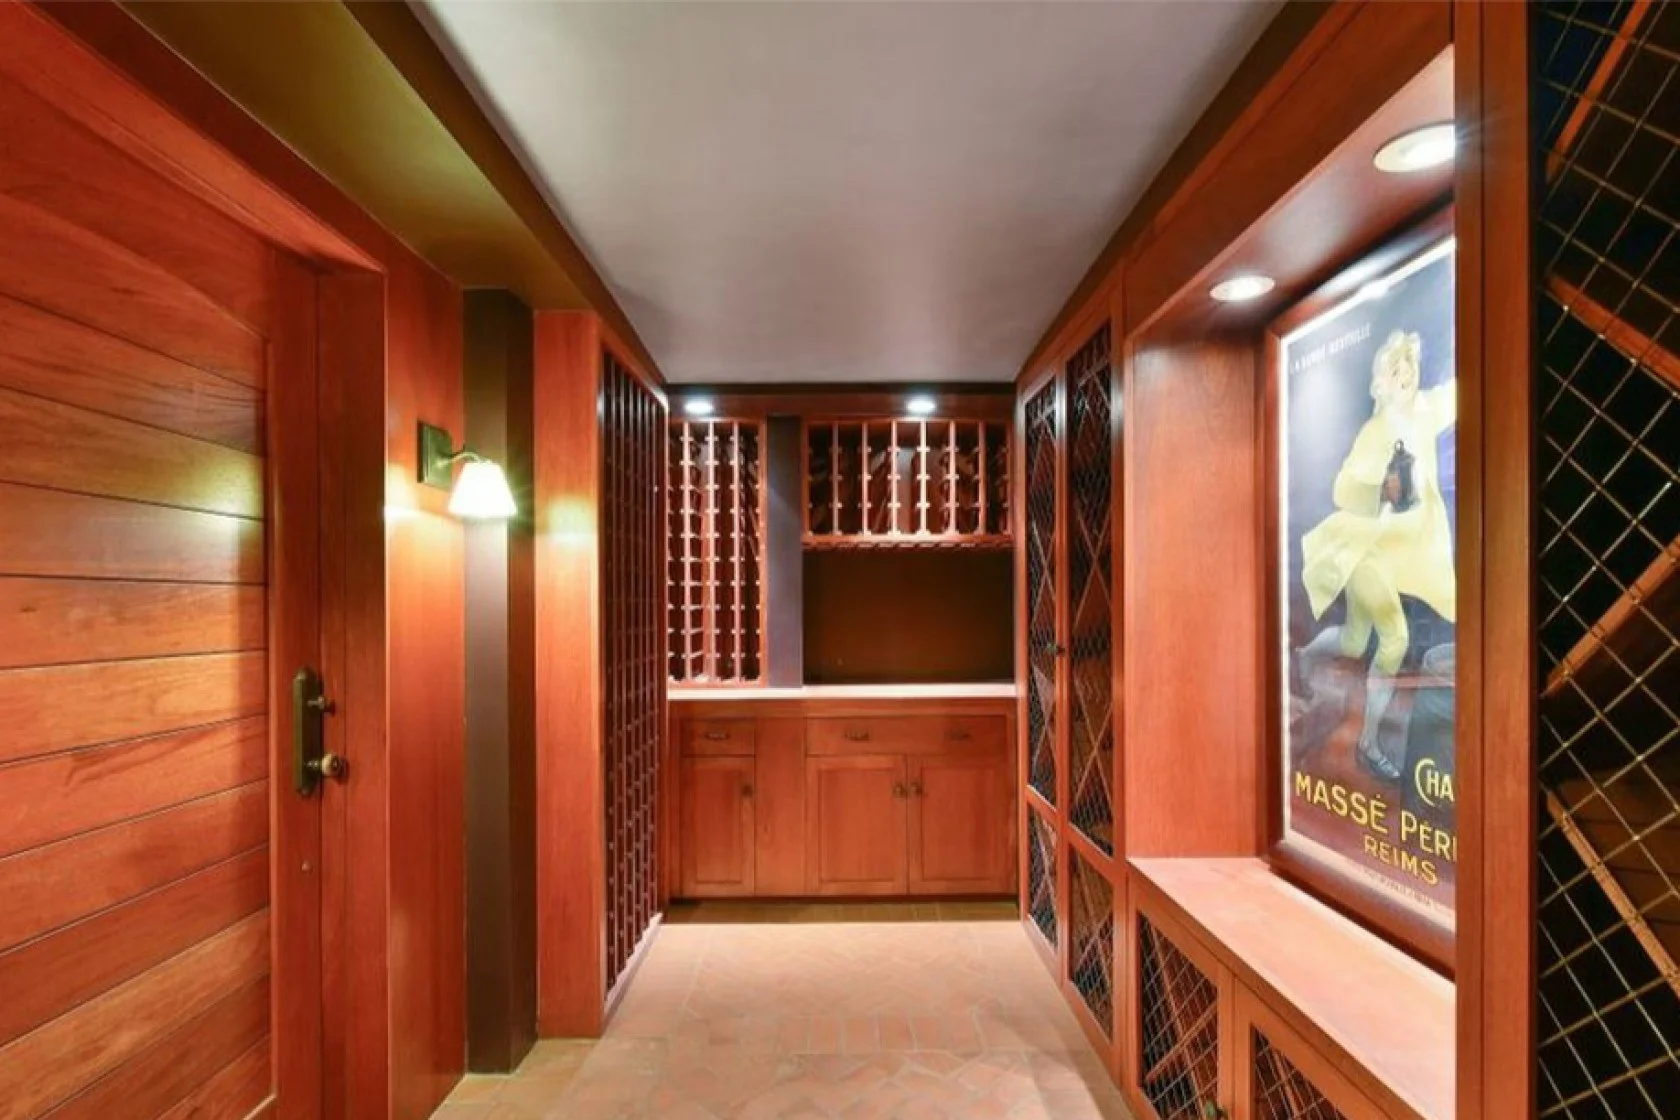 Джулія Робертс придбала будинок за 8,3 мільйонів доларів, і ось як він виглядає - фото 469979